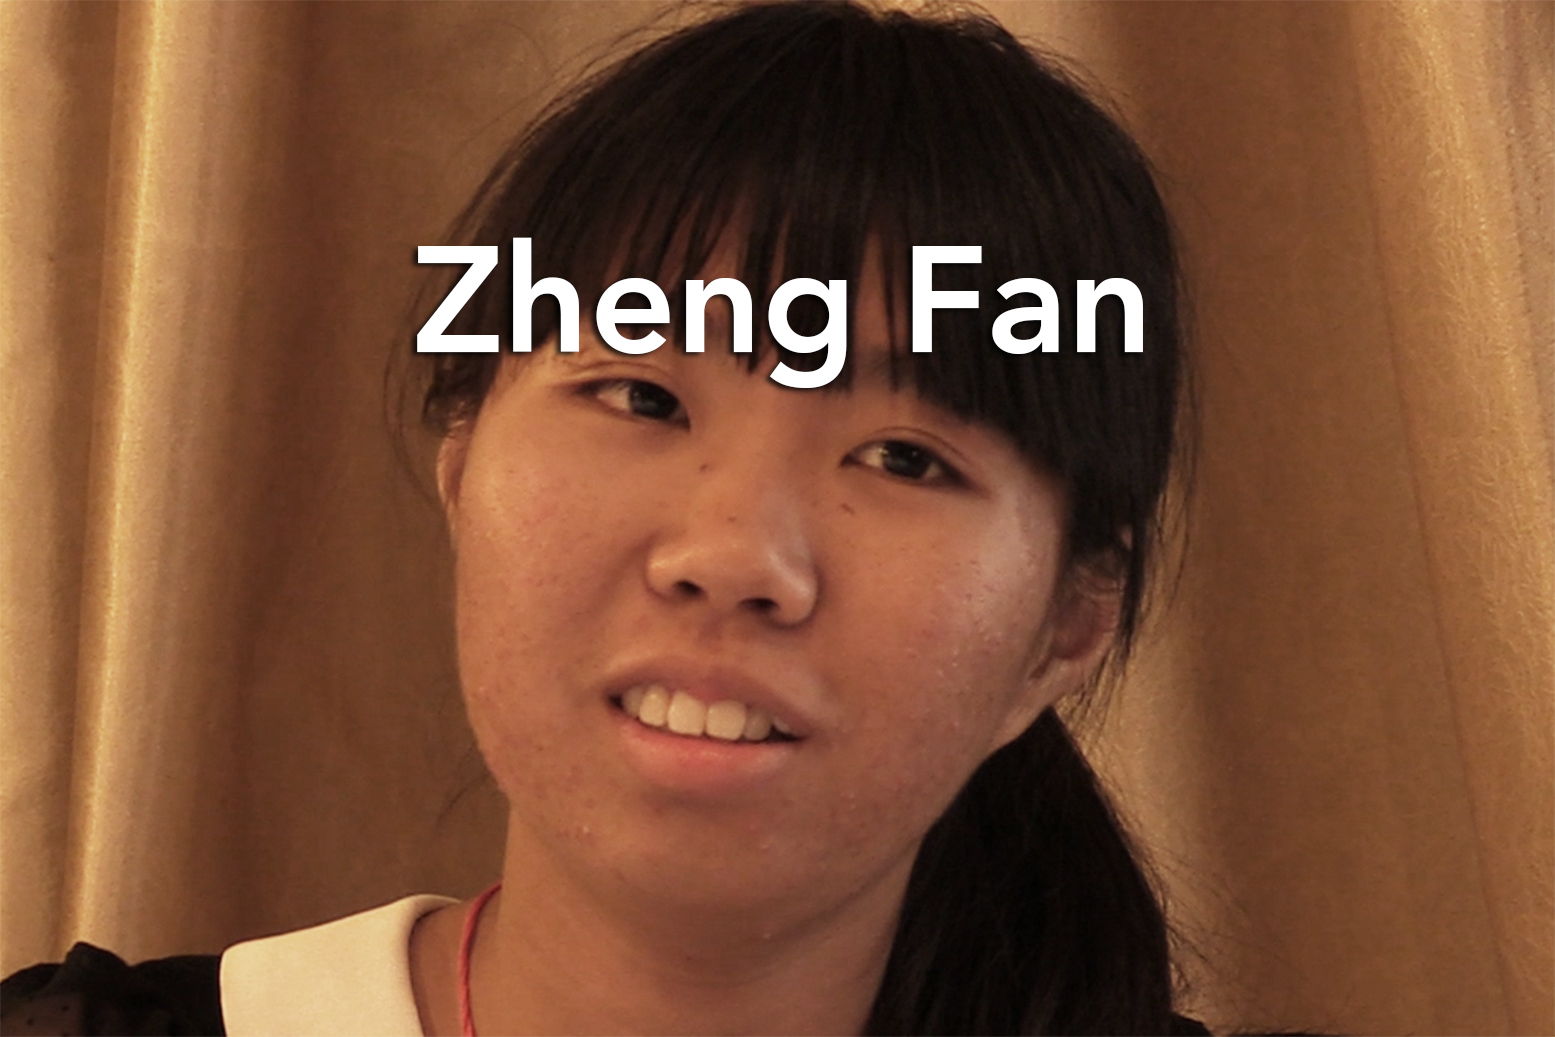 zheng-fan